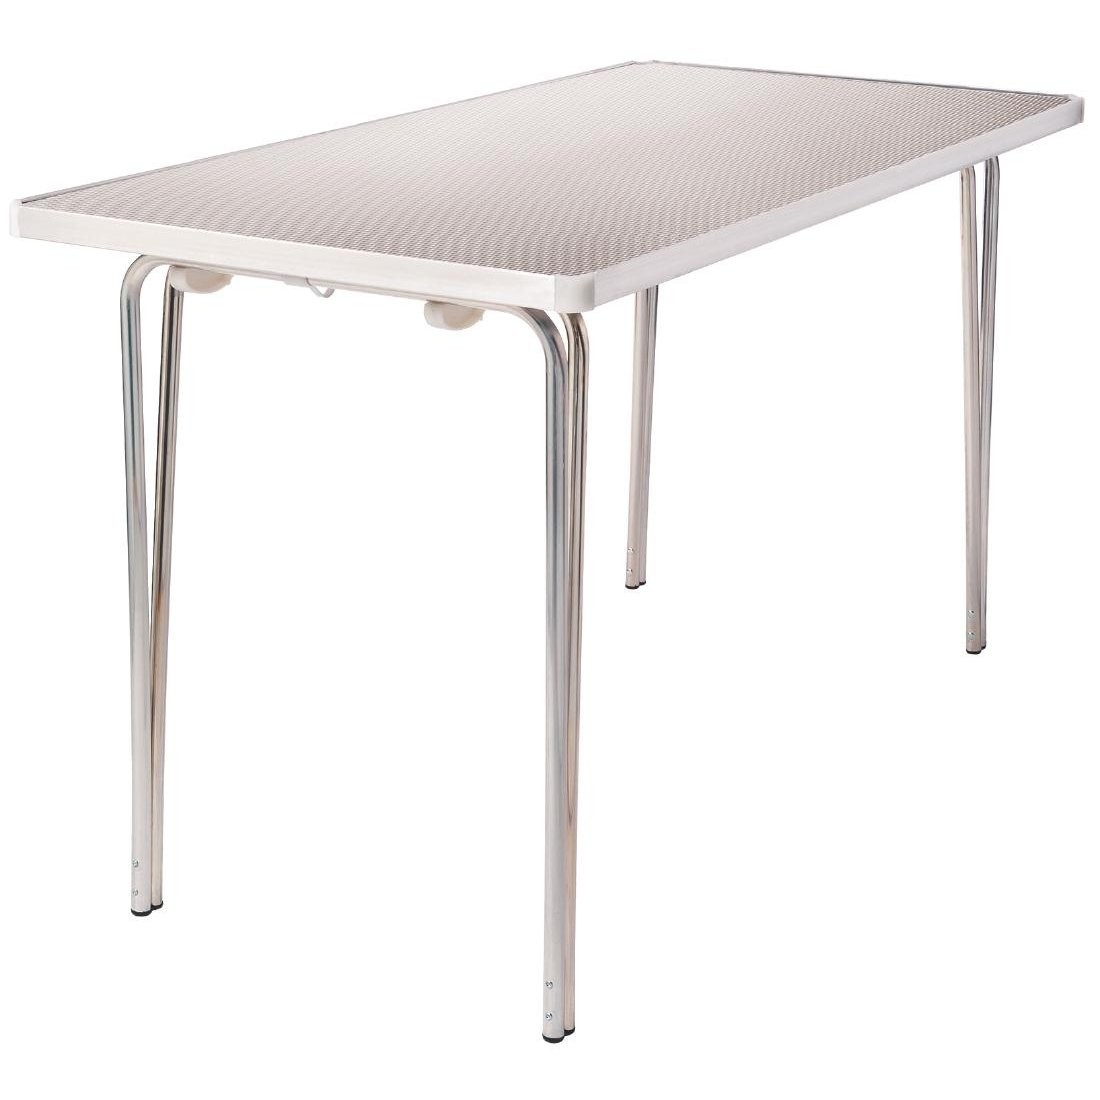 Gopak Aluminum Folding Tables Lightweight Garden Bbq Table 